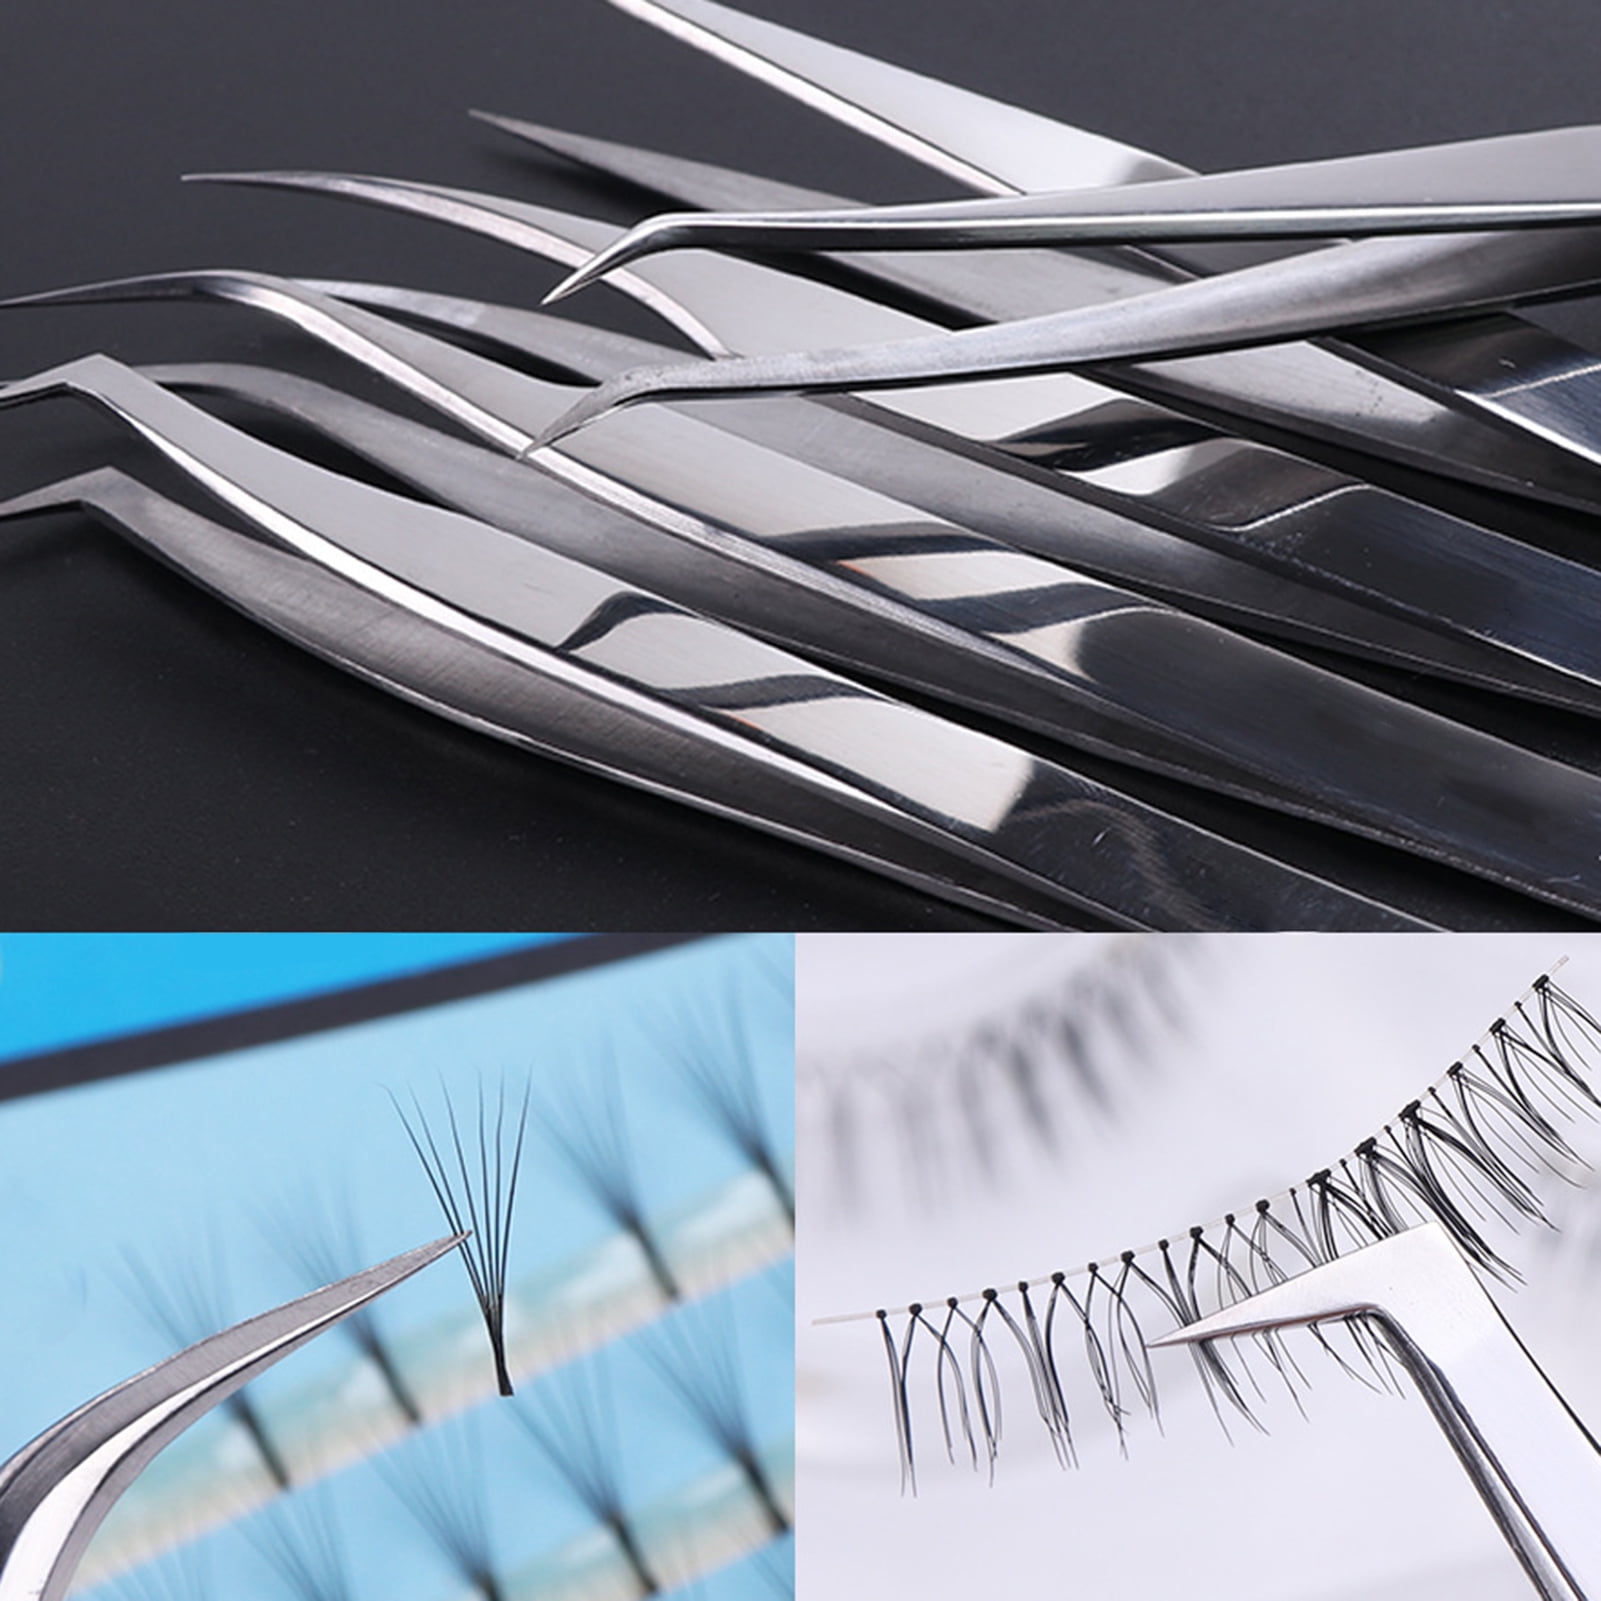 Stainless Steel Soft-grip Tweezers Craft Tweezers Crossing Lock Reverse  Grip Precision Tweezers For Eyelash Nail